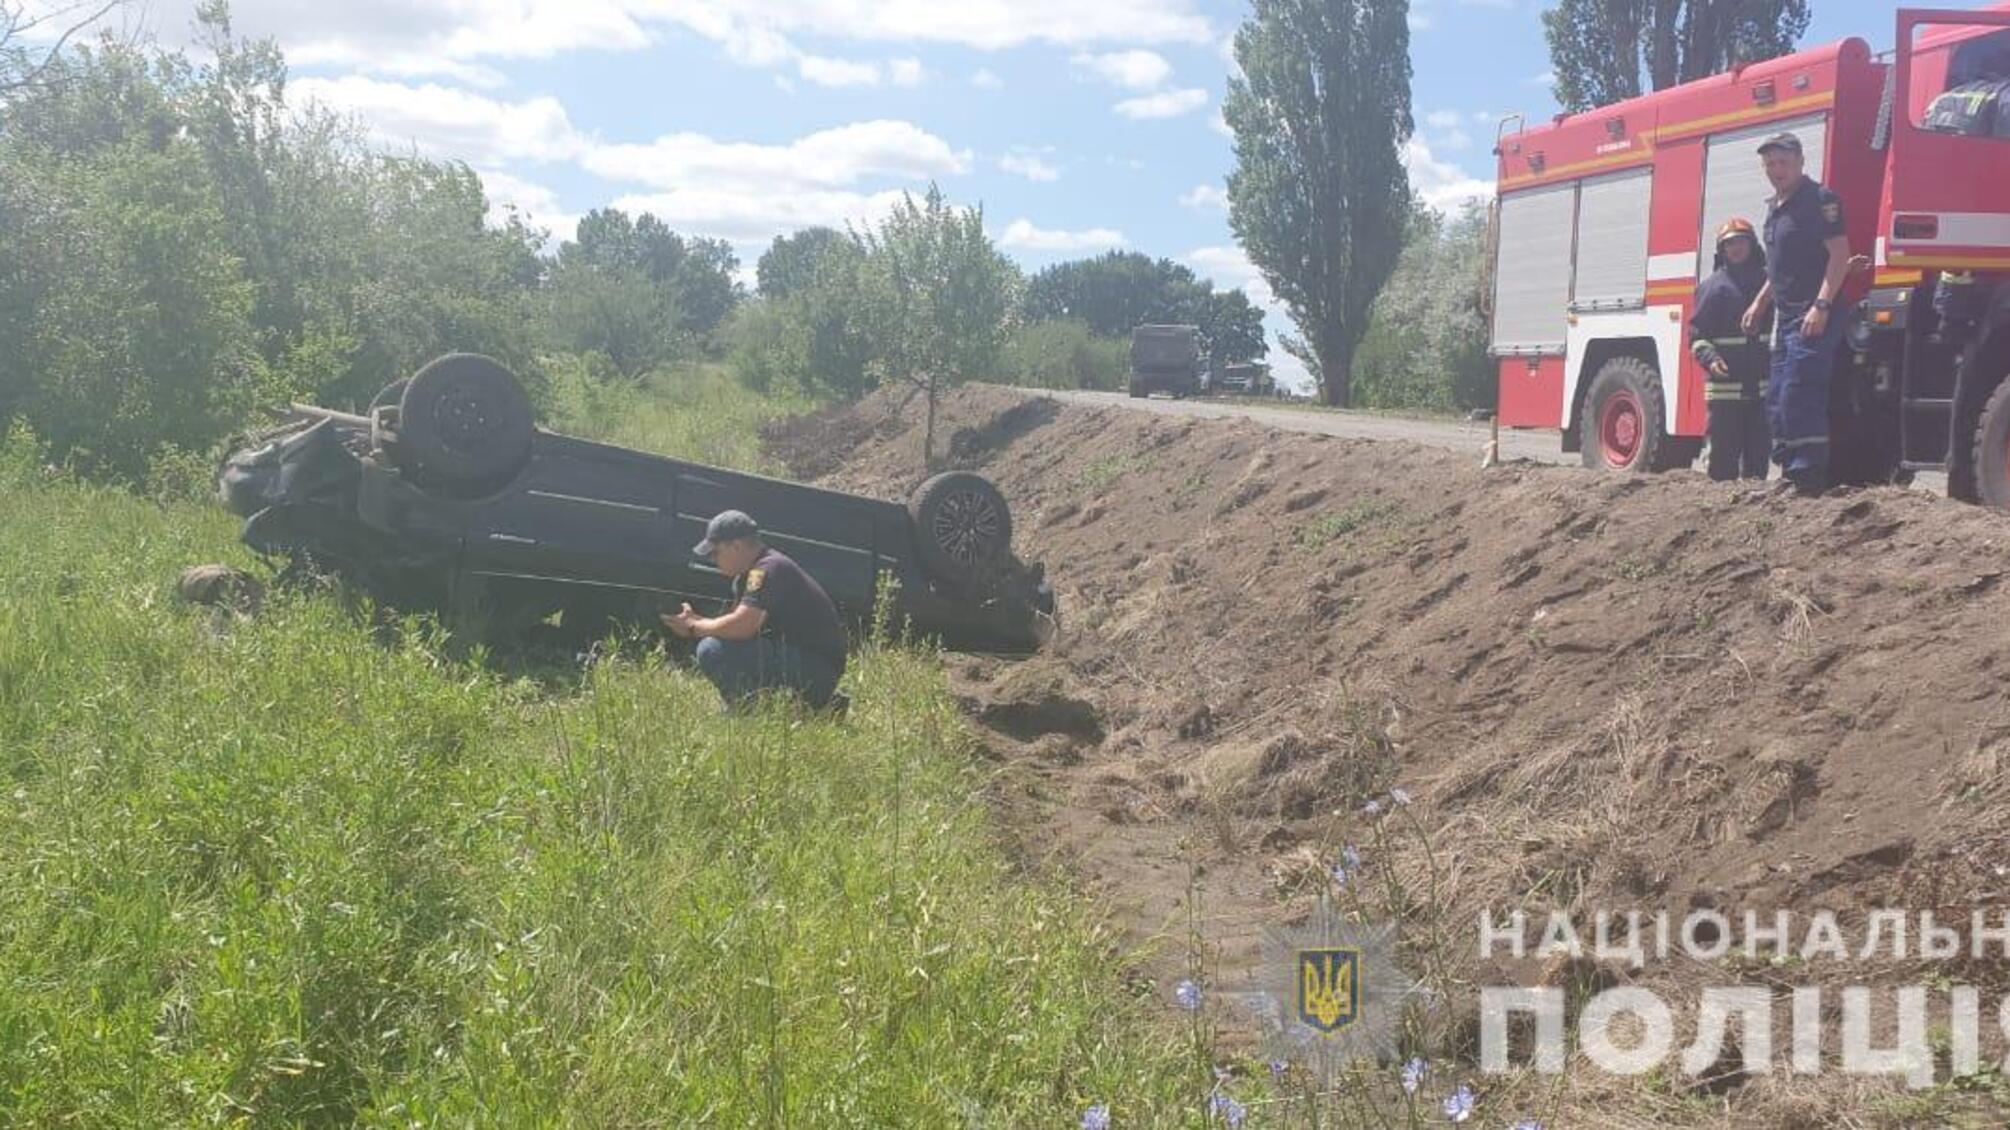 Подільські поліцейські розслідують обставини ДТП, яка сталася біля села Малий Куяльник